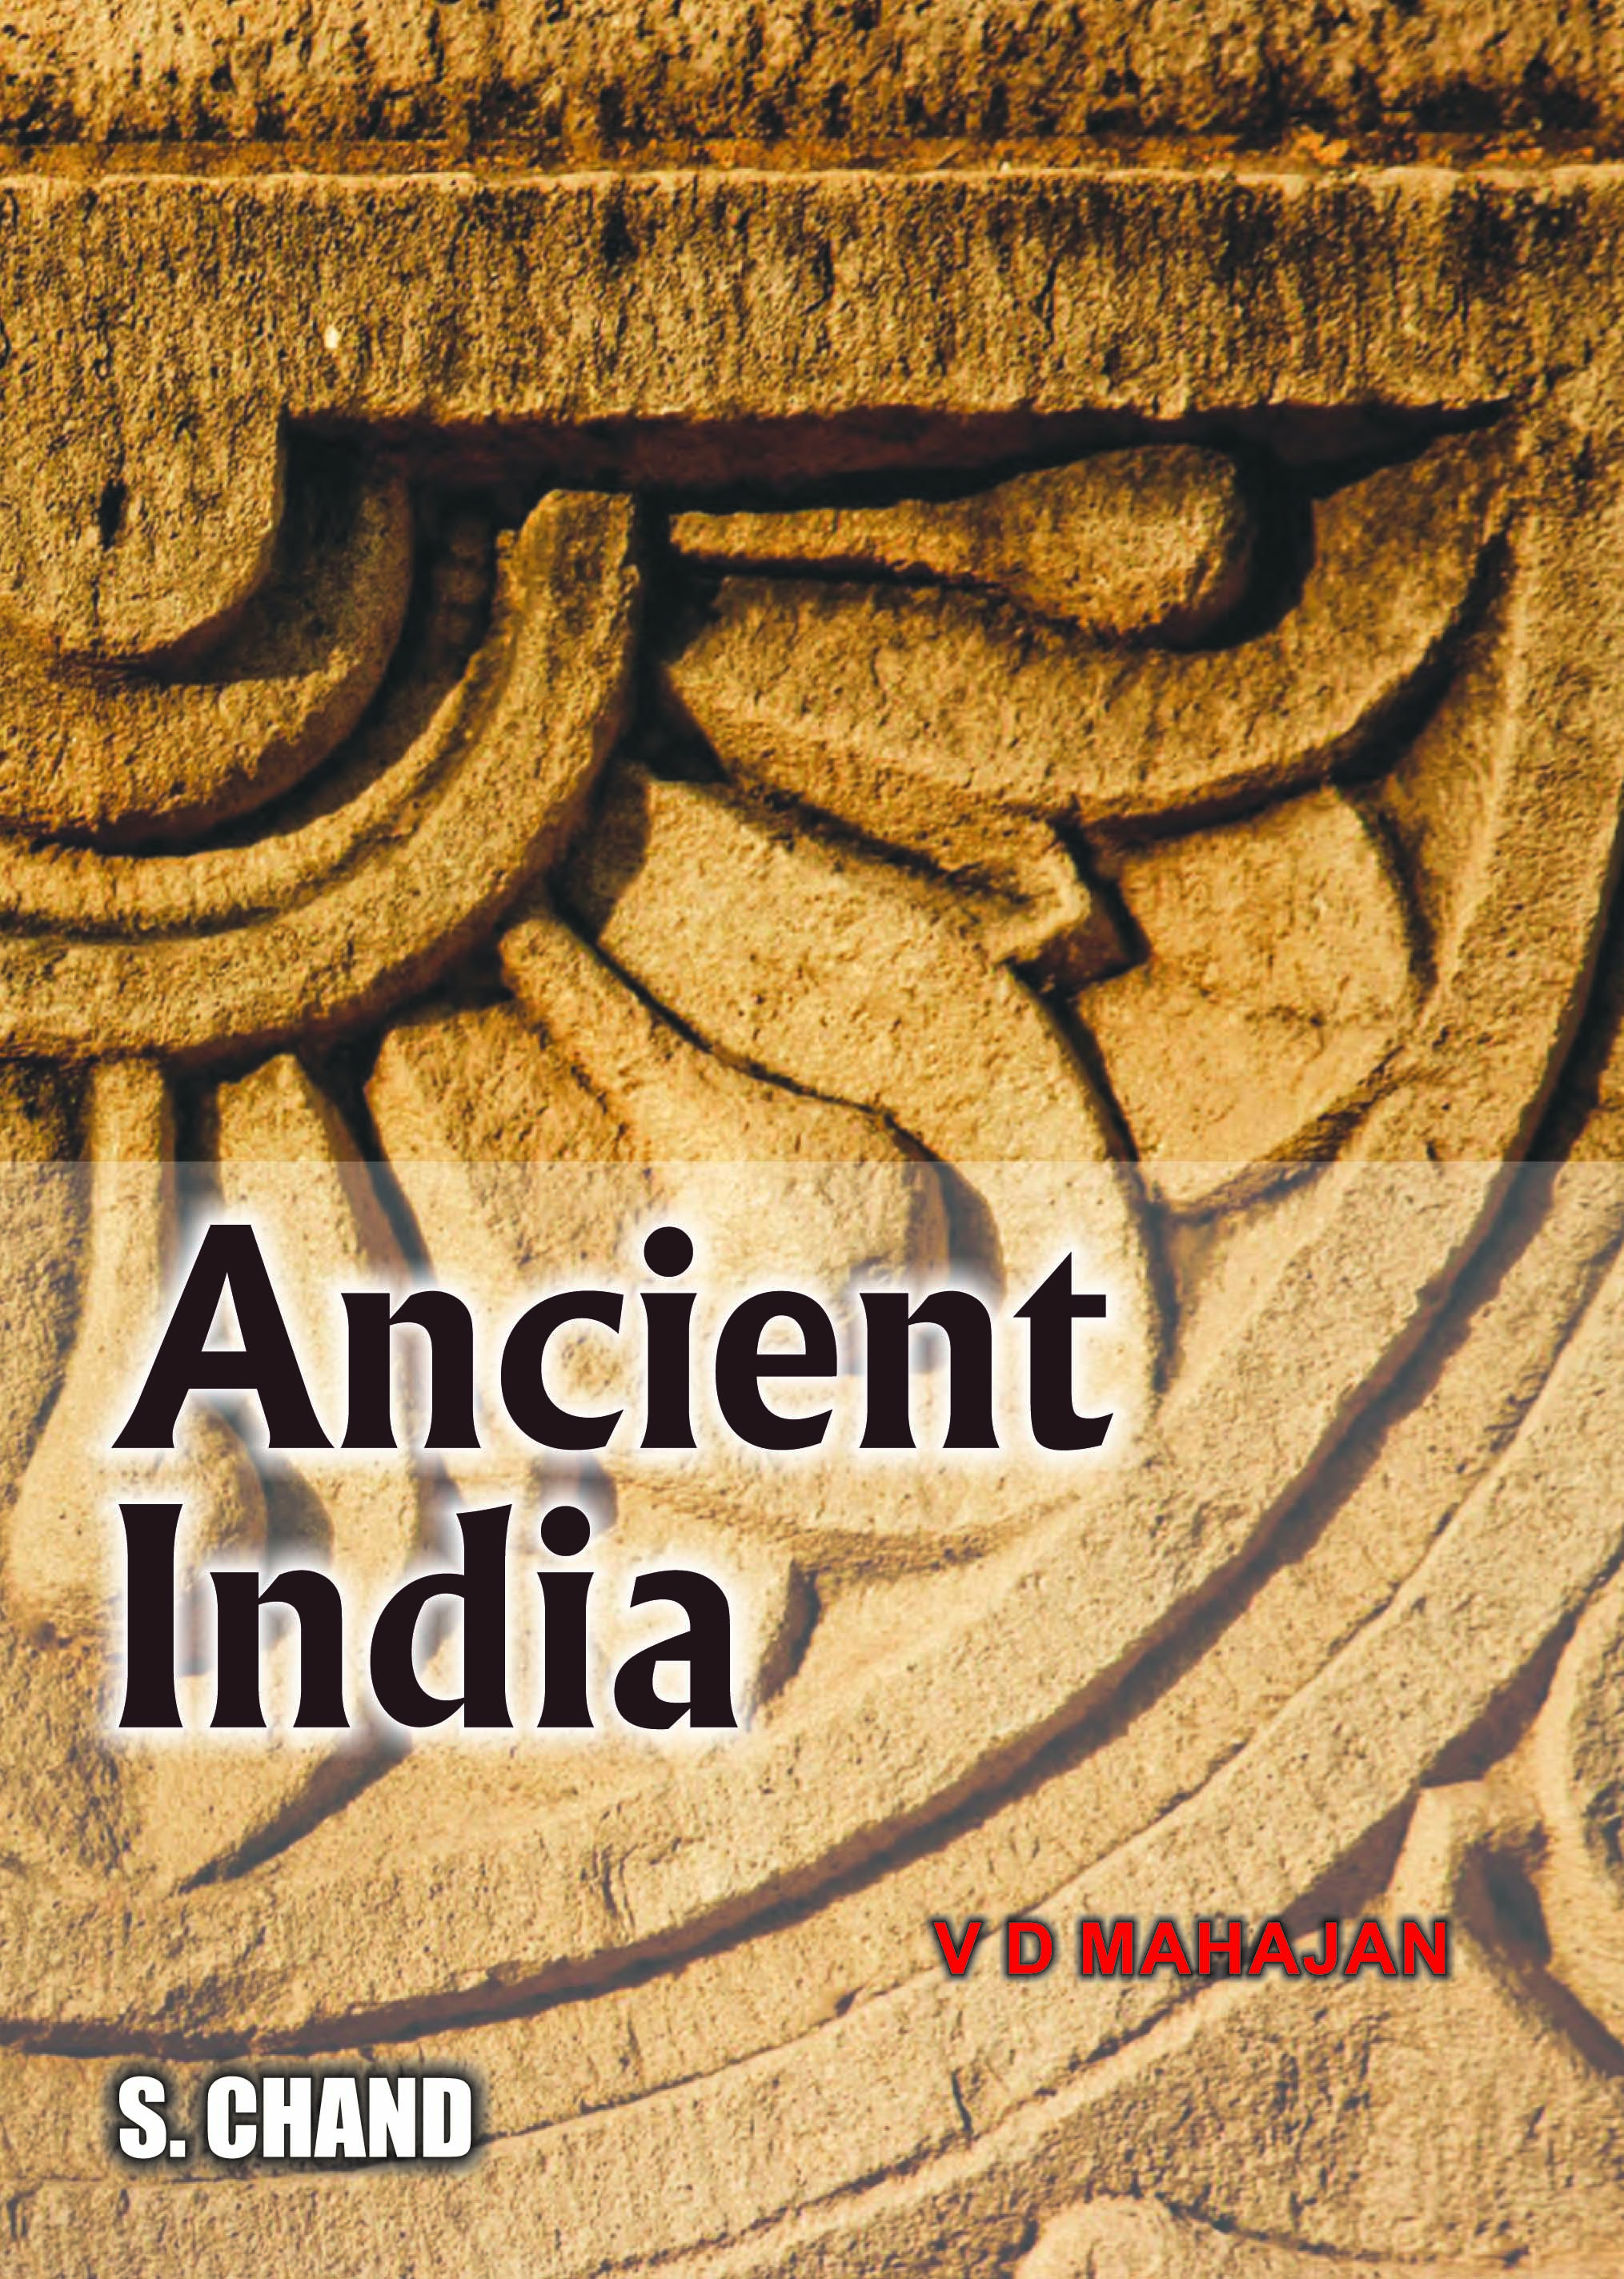 ancient-india-by-v-d-mahajan